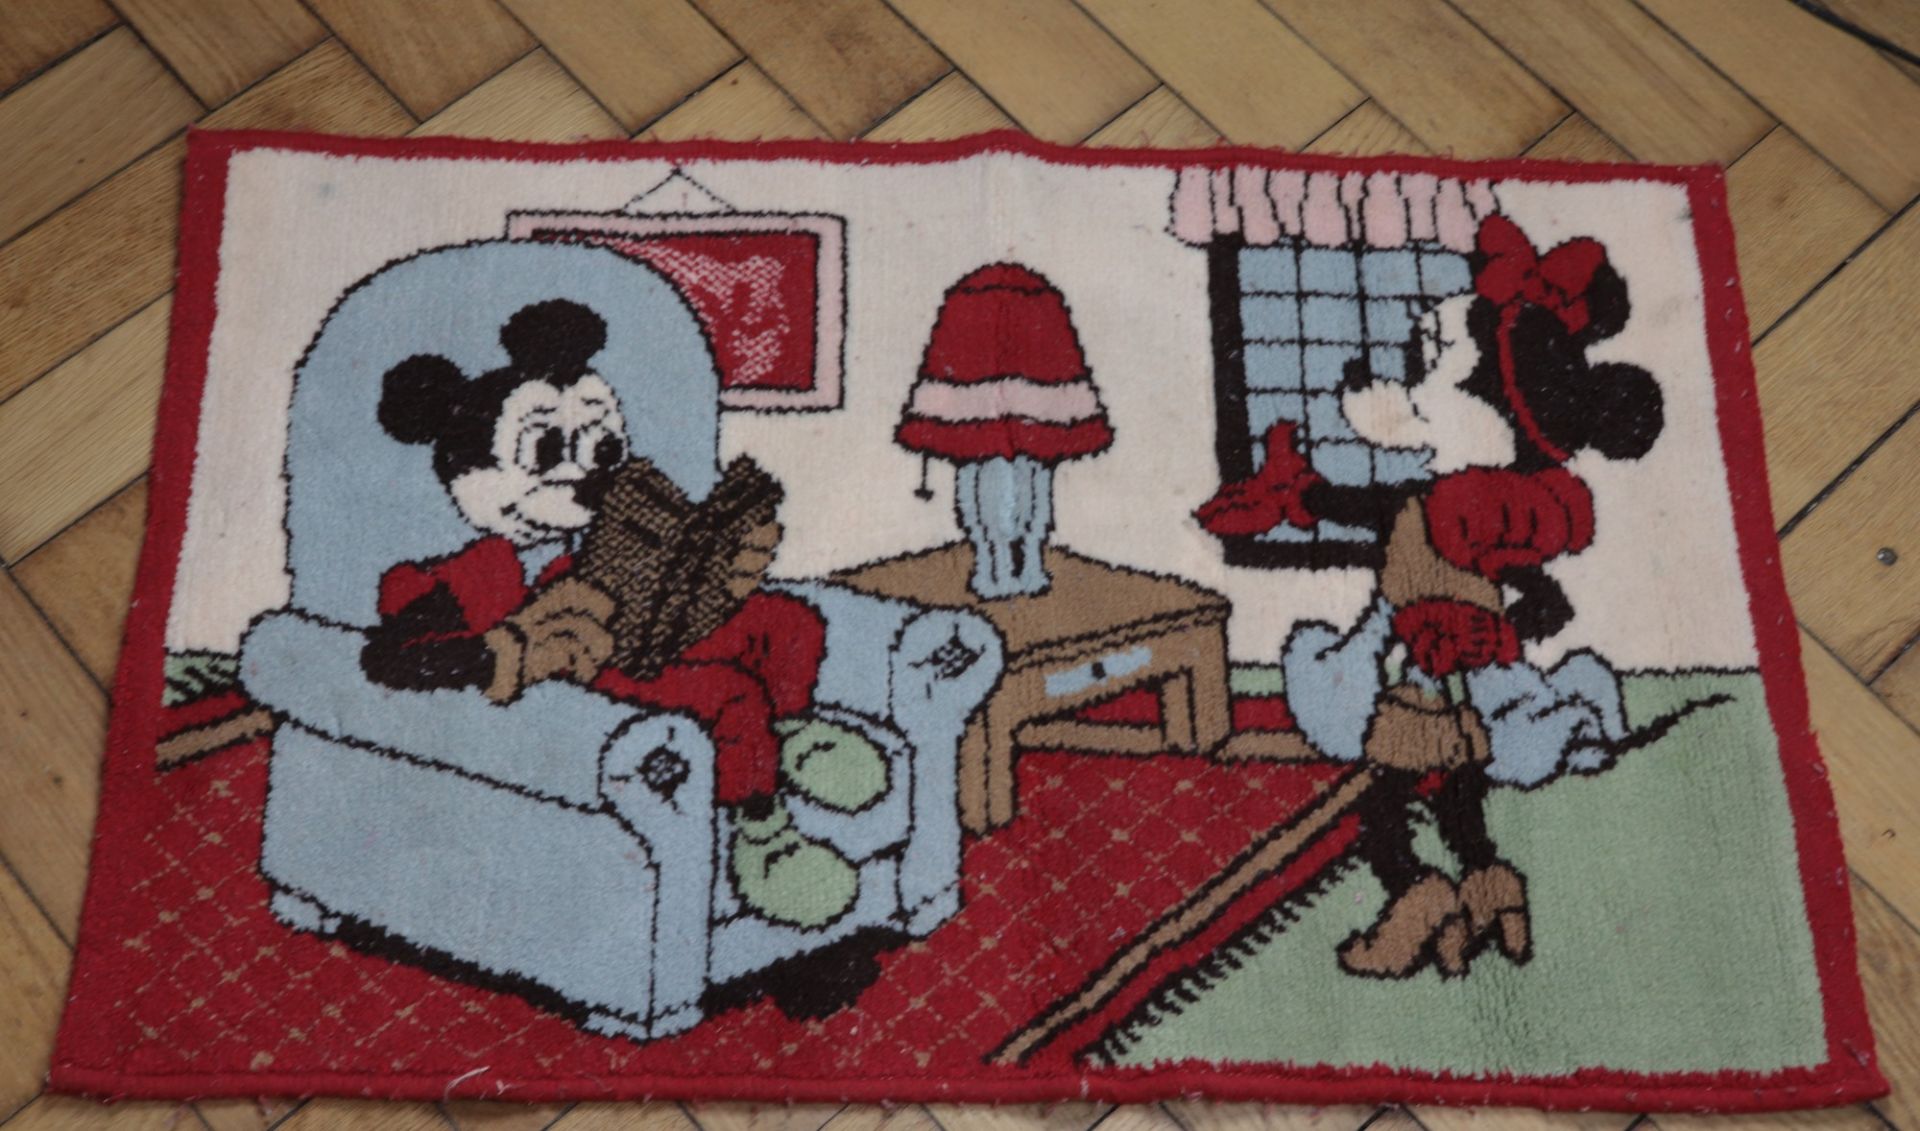 Mickey Mouse - Sammlung 20. Jh., 16 Teile, vielfältige Sammlung aus versch. Materialien u. - Image 4 of 9